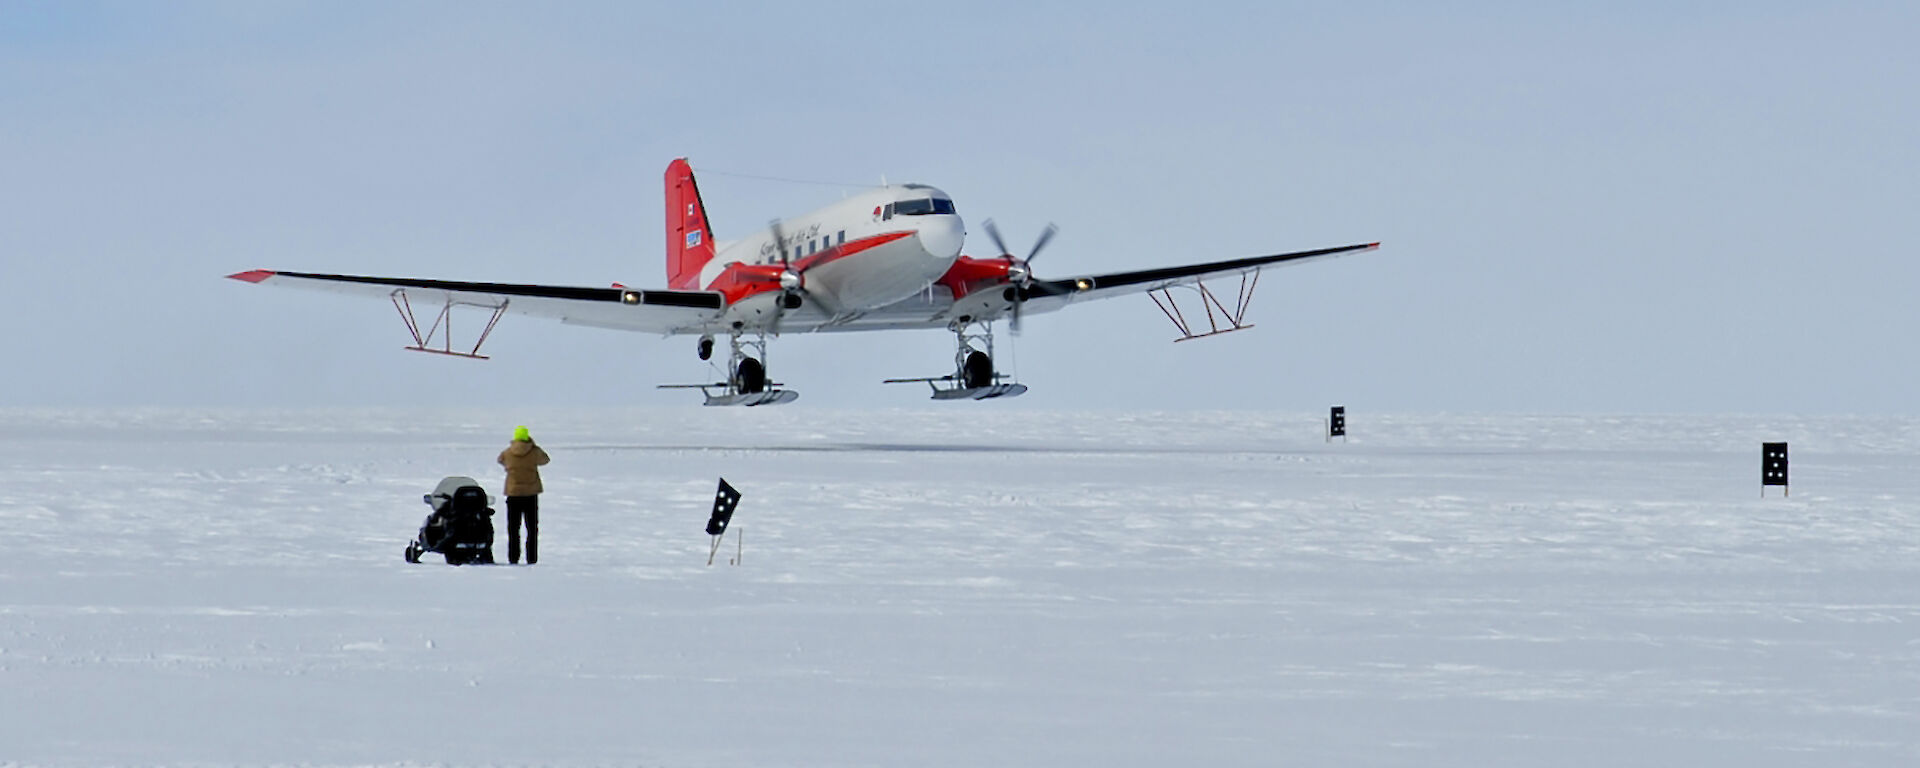 Basler aircraft with wing-mounted ice penetrating radar antennae landing